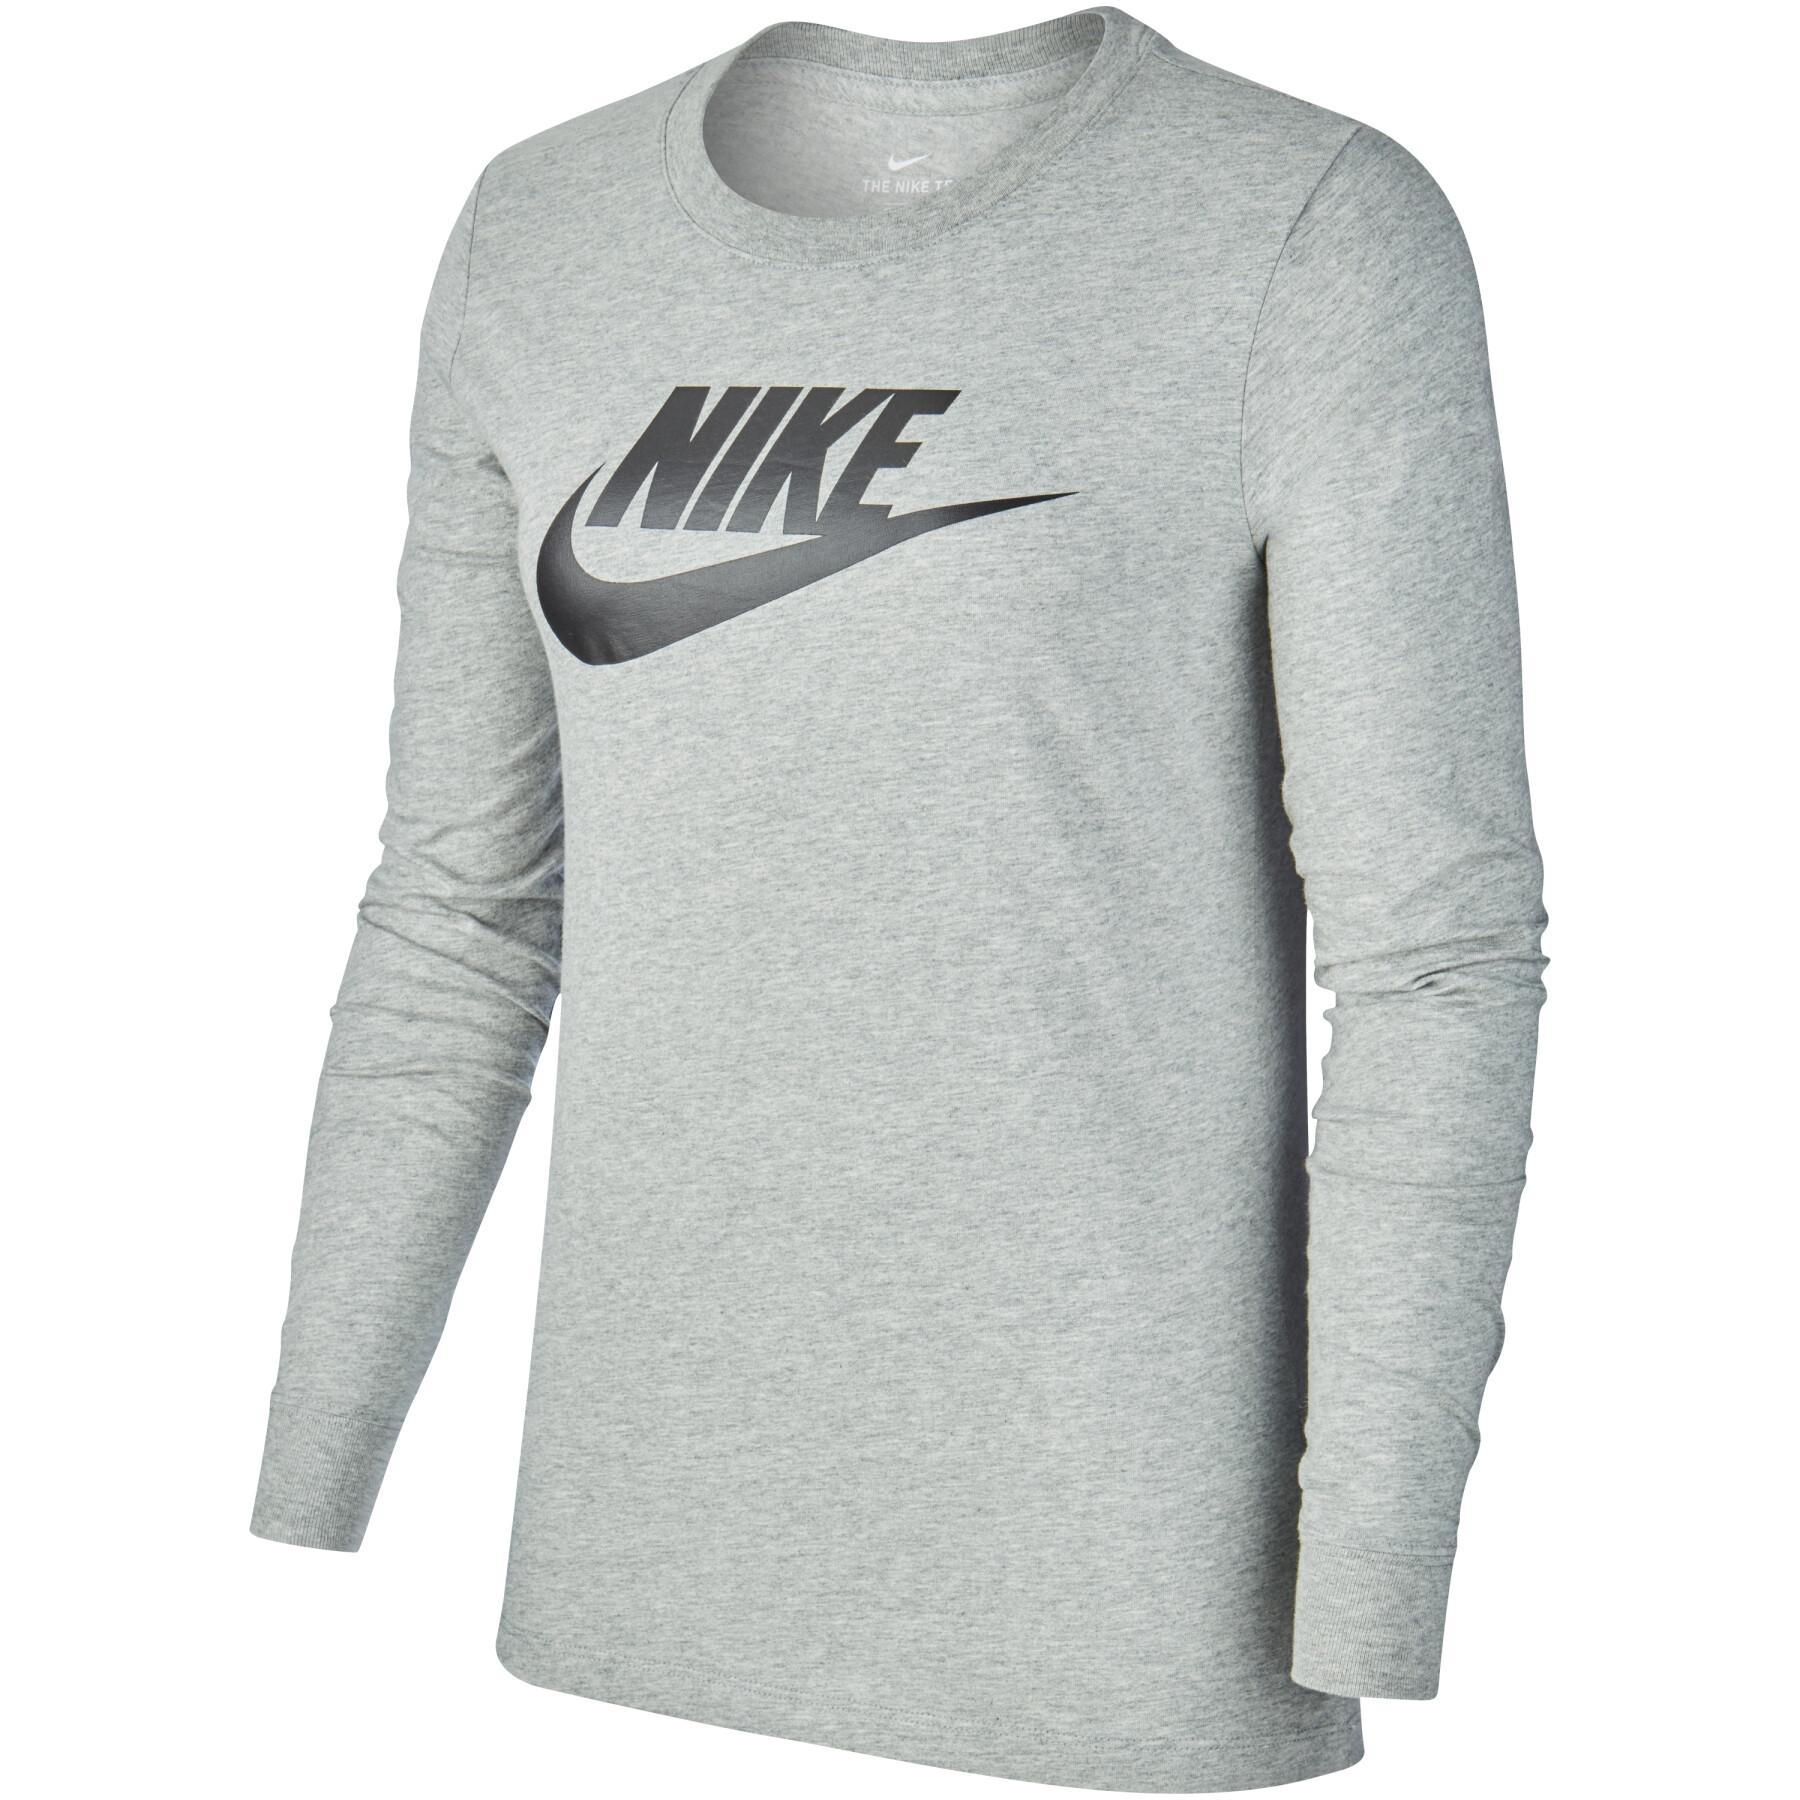 T-shirt femme Nike sportswear